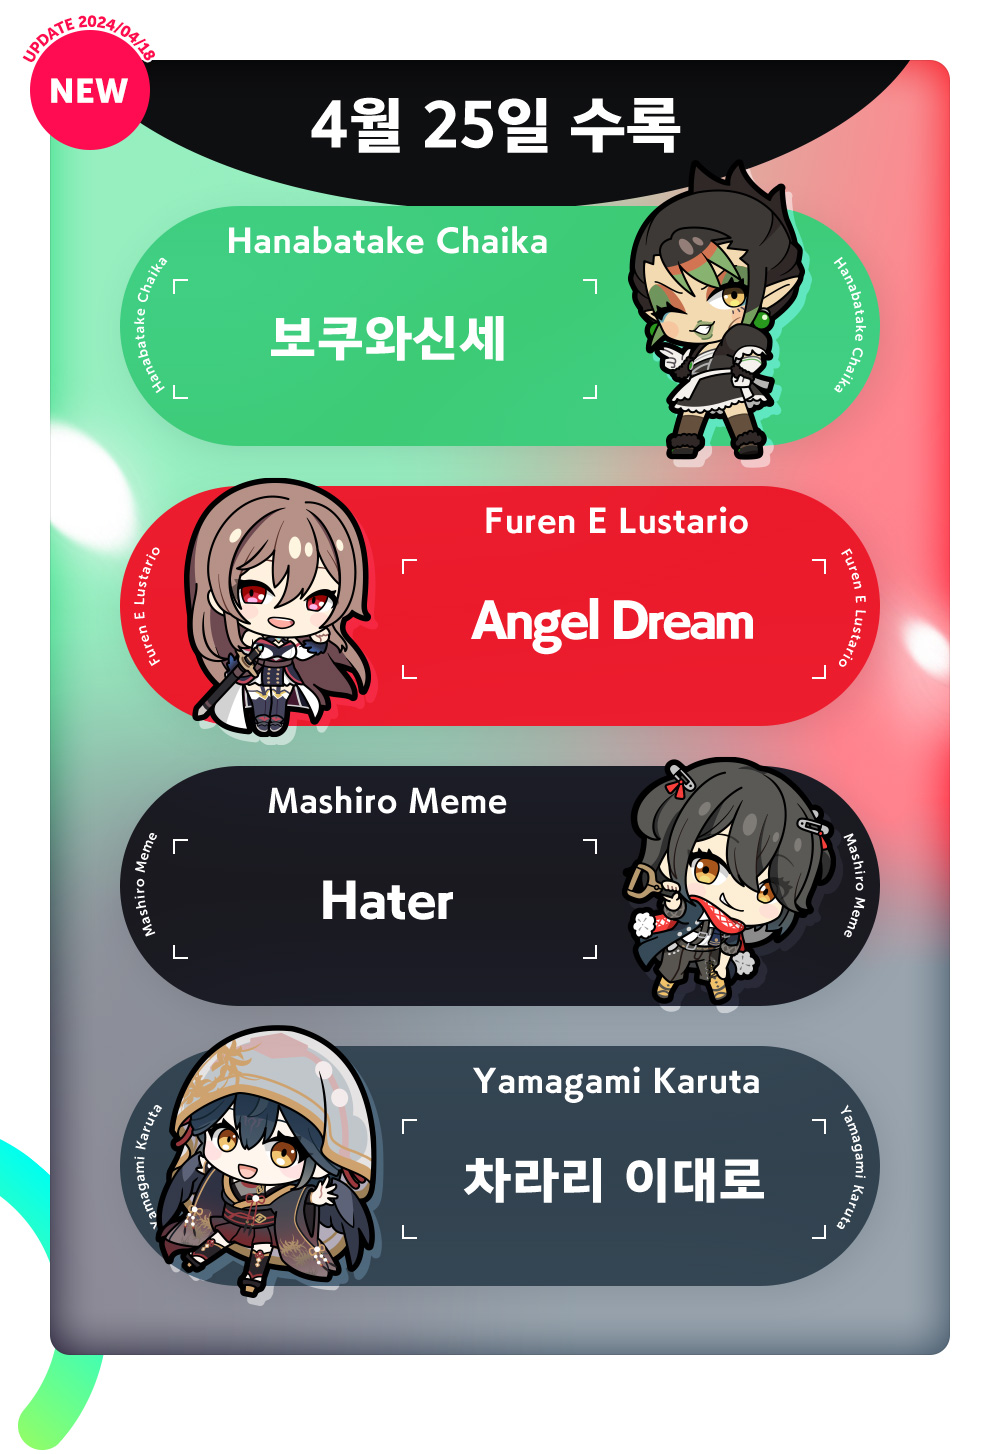 4월 25일 수록 수록　Hanabatake Chaika "보쿠와신세"　Furen E Lustario "Angel Dream"　Mashiro Meme "Hater"　Yamagami Karuta "차라리 이대로"